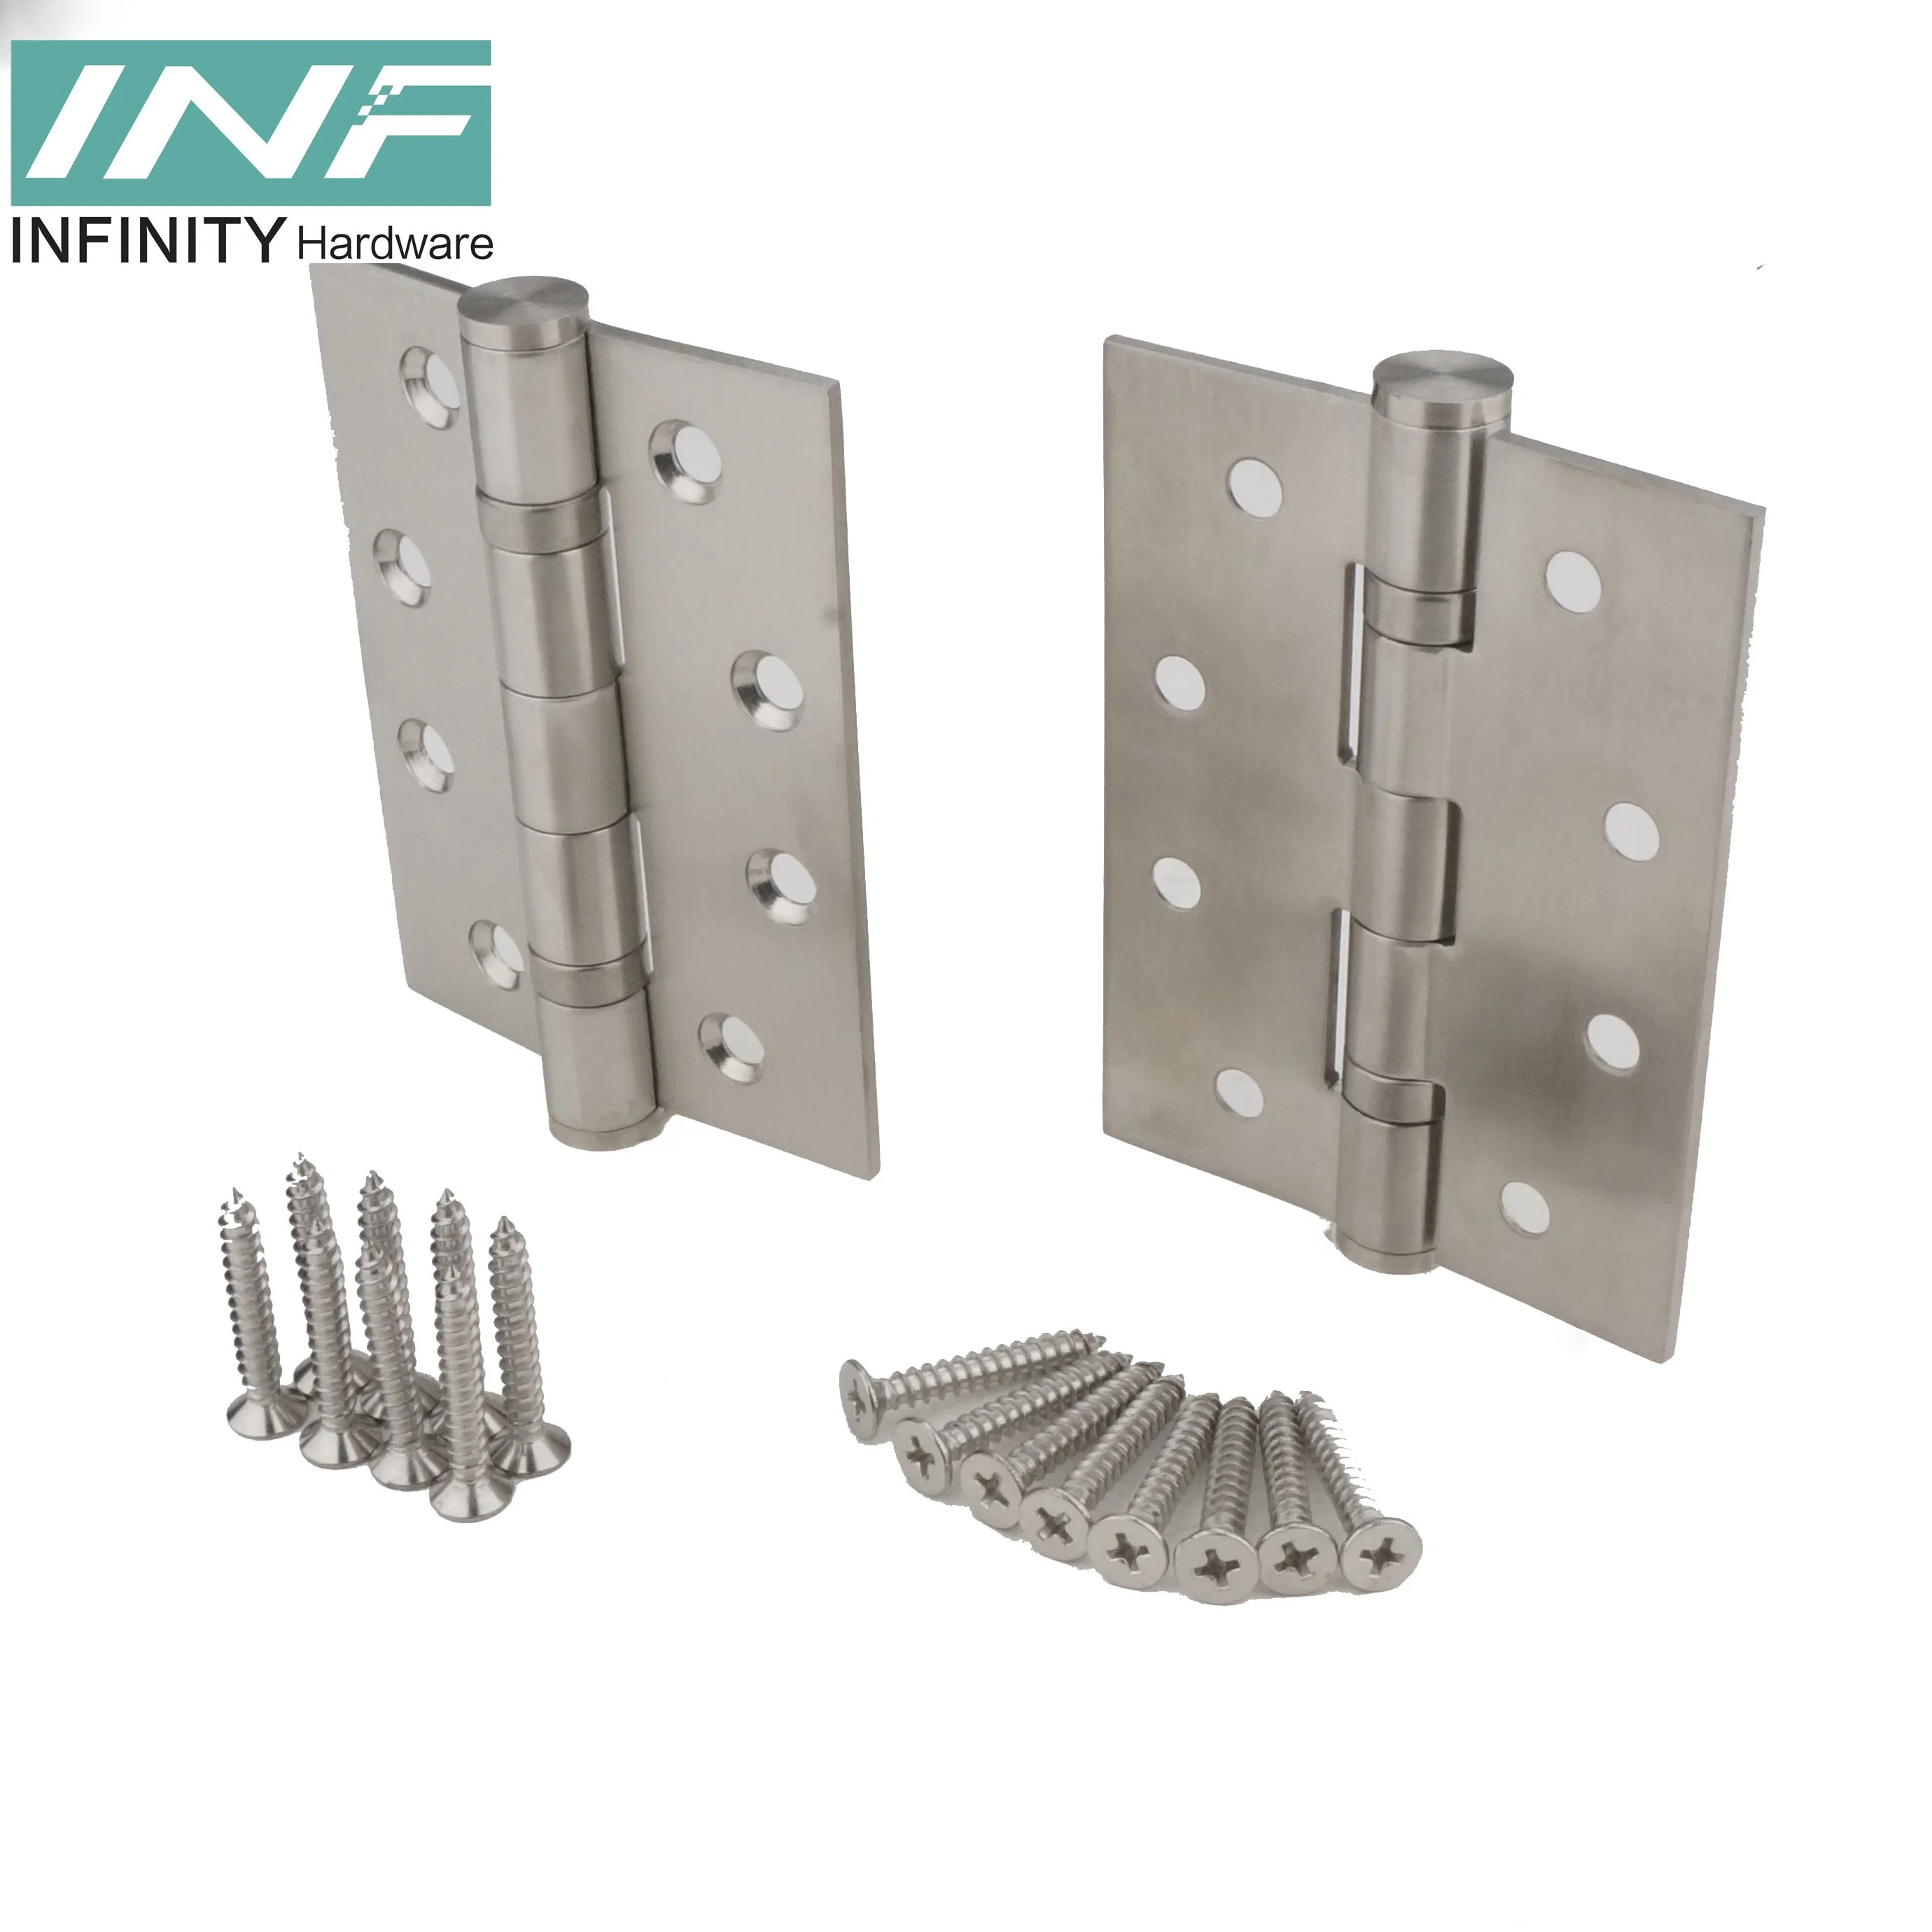 Factory Wholesale Door & Window Hinges Iron Stainless Steel 201 Door Hinge Wooden Door Hardware Fitting Bathroom Accessories